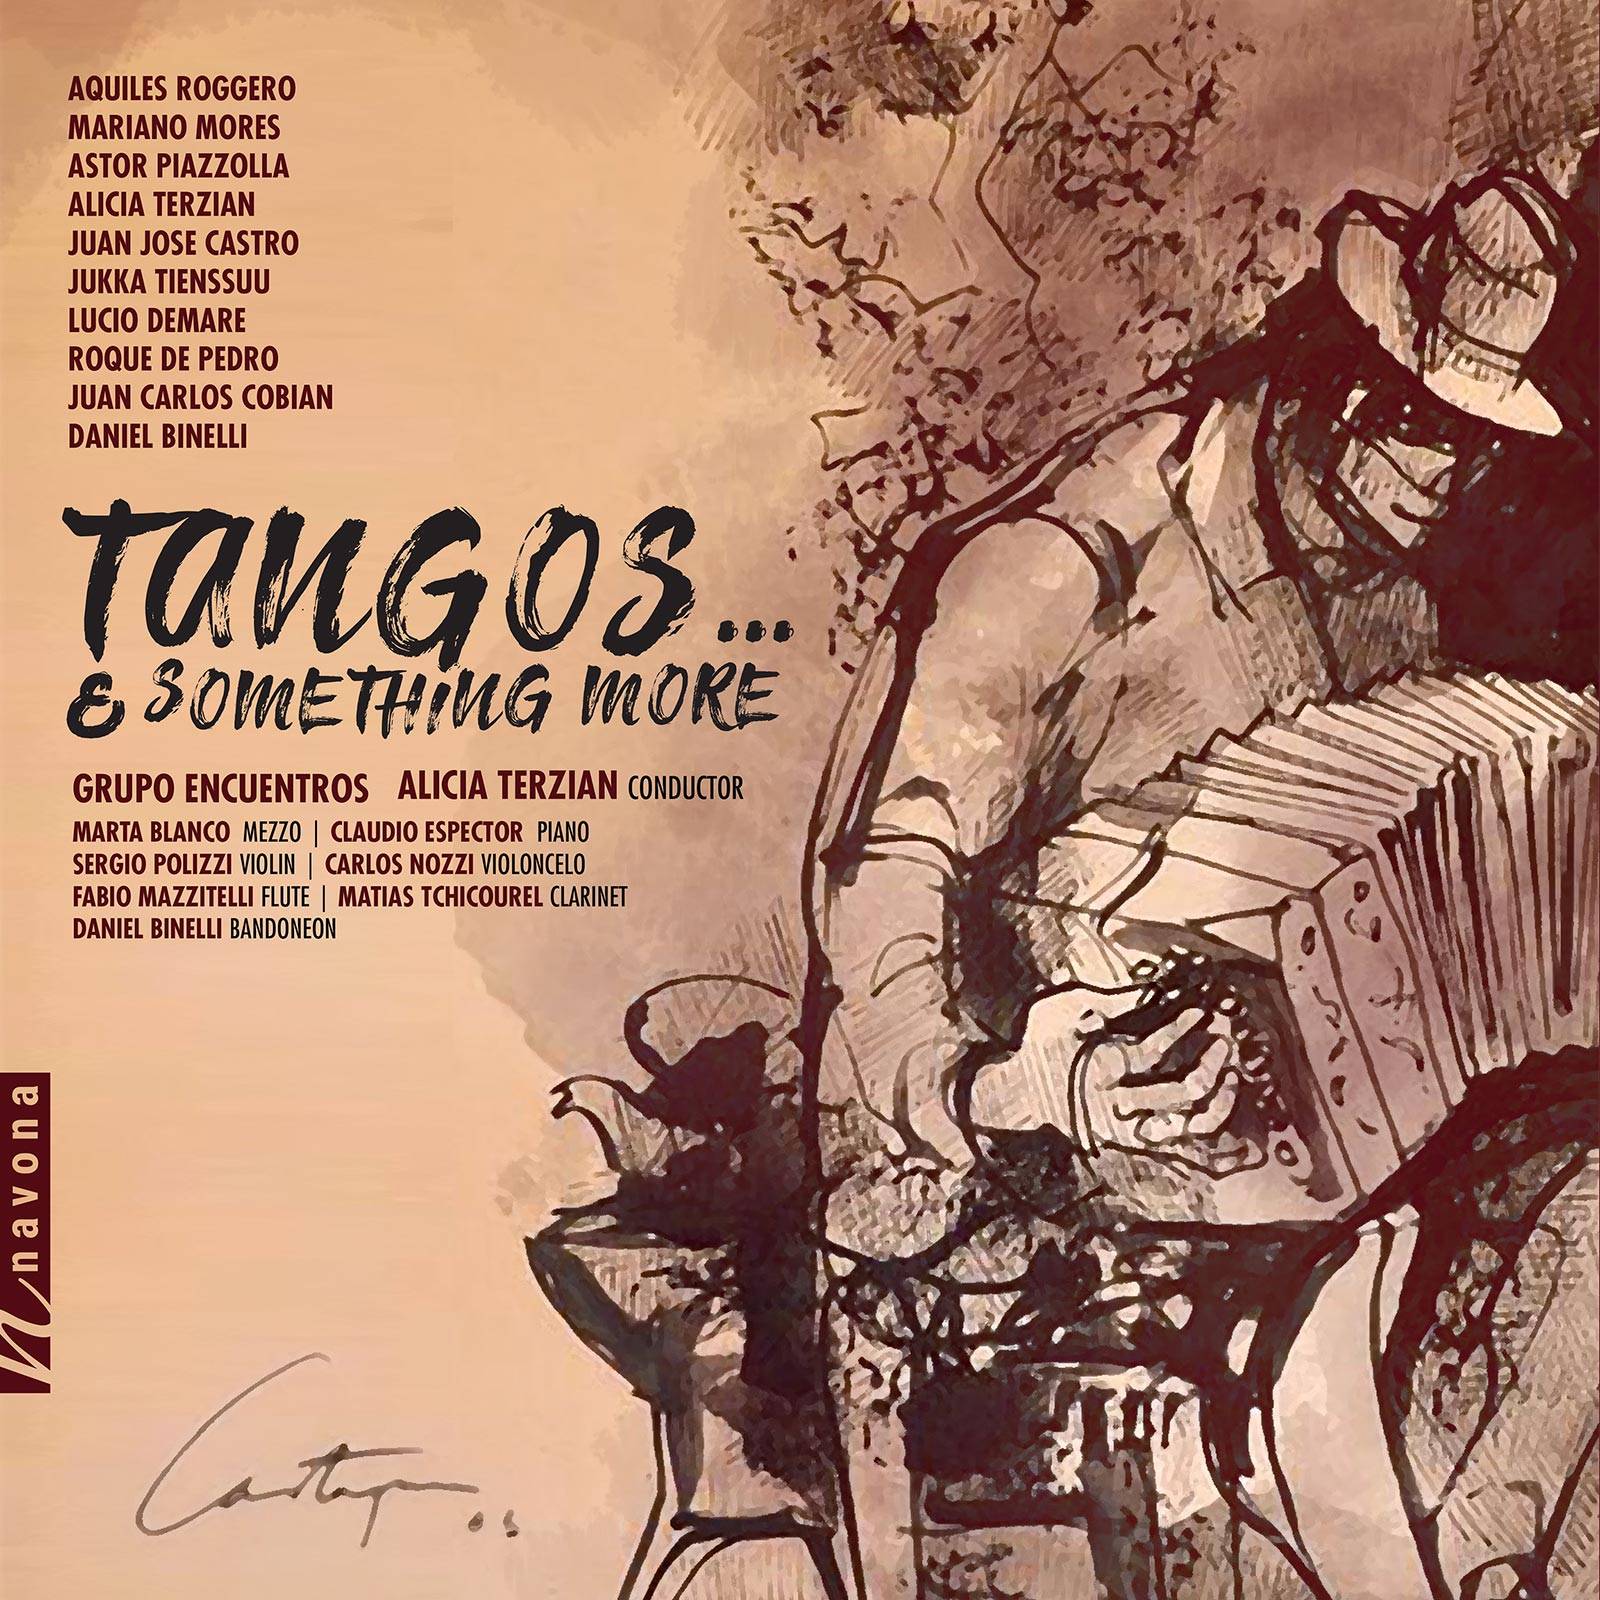 Tangos… & Something More